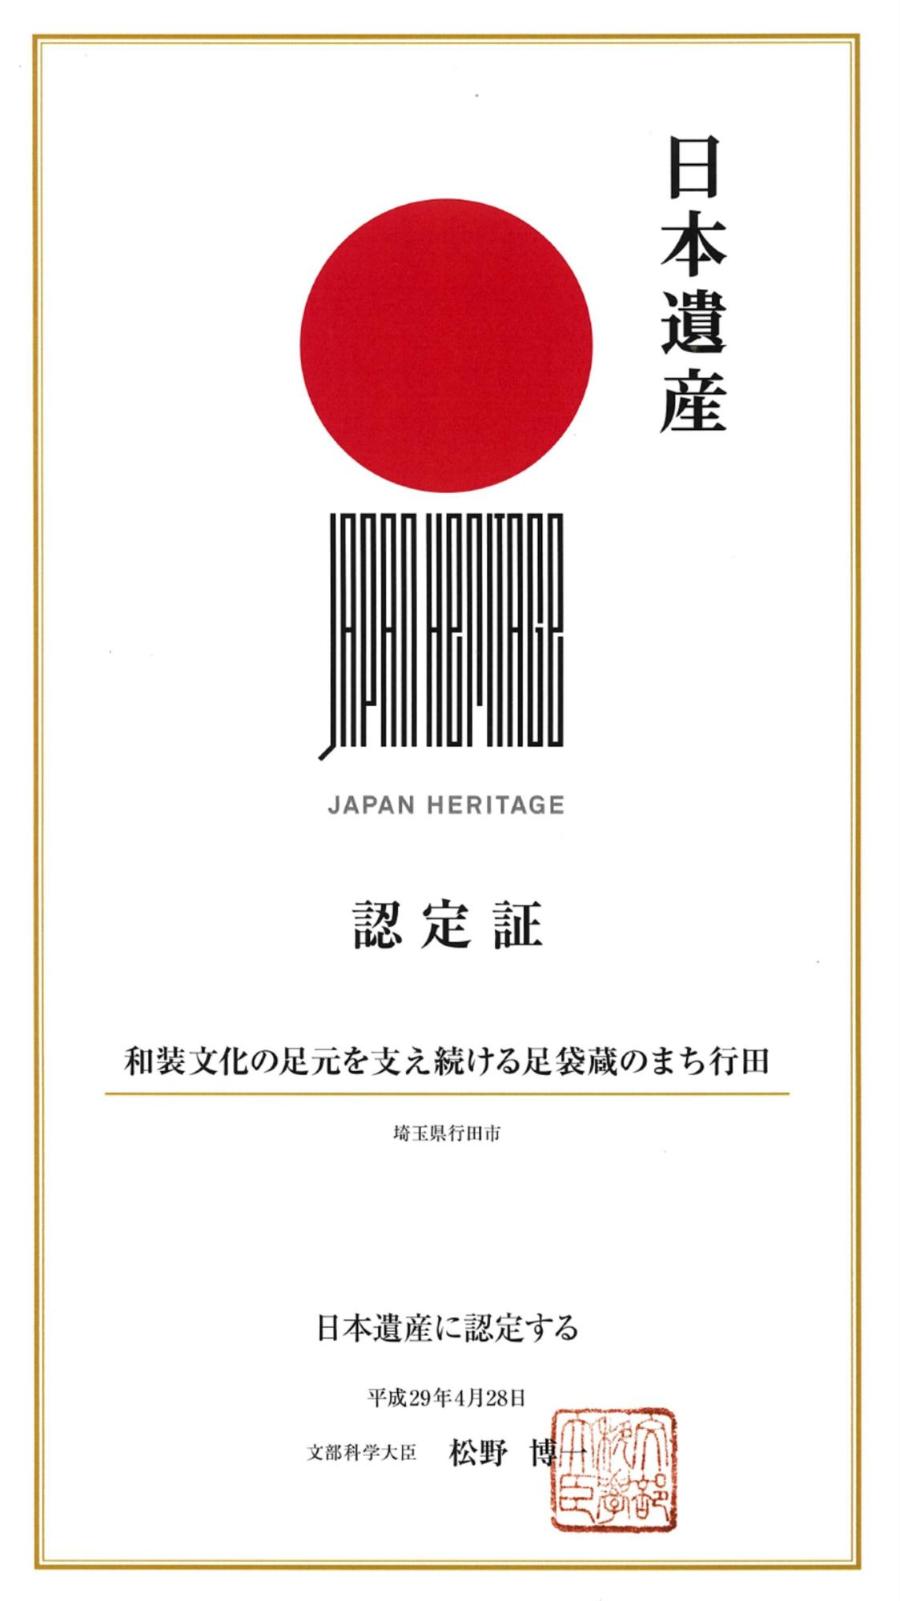 日本遺産が平成29年に認定された際の認定証